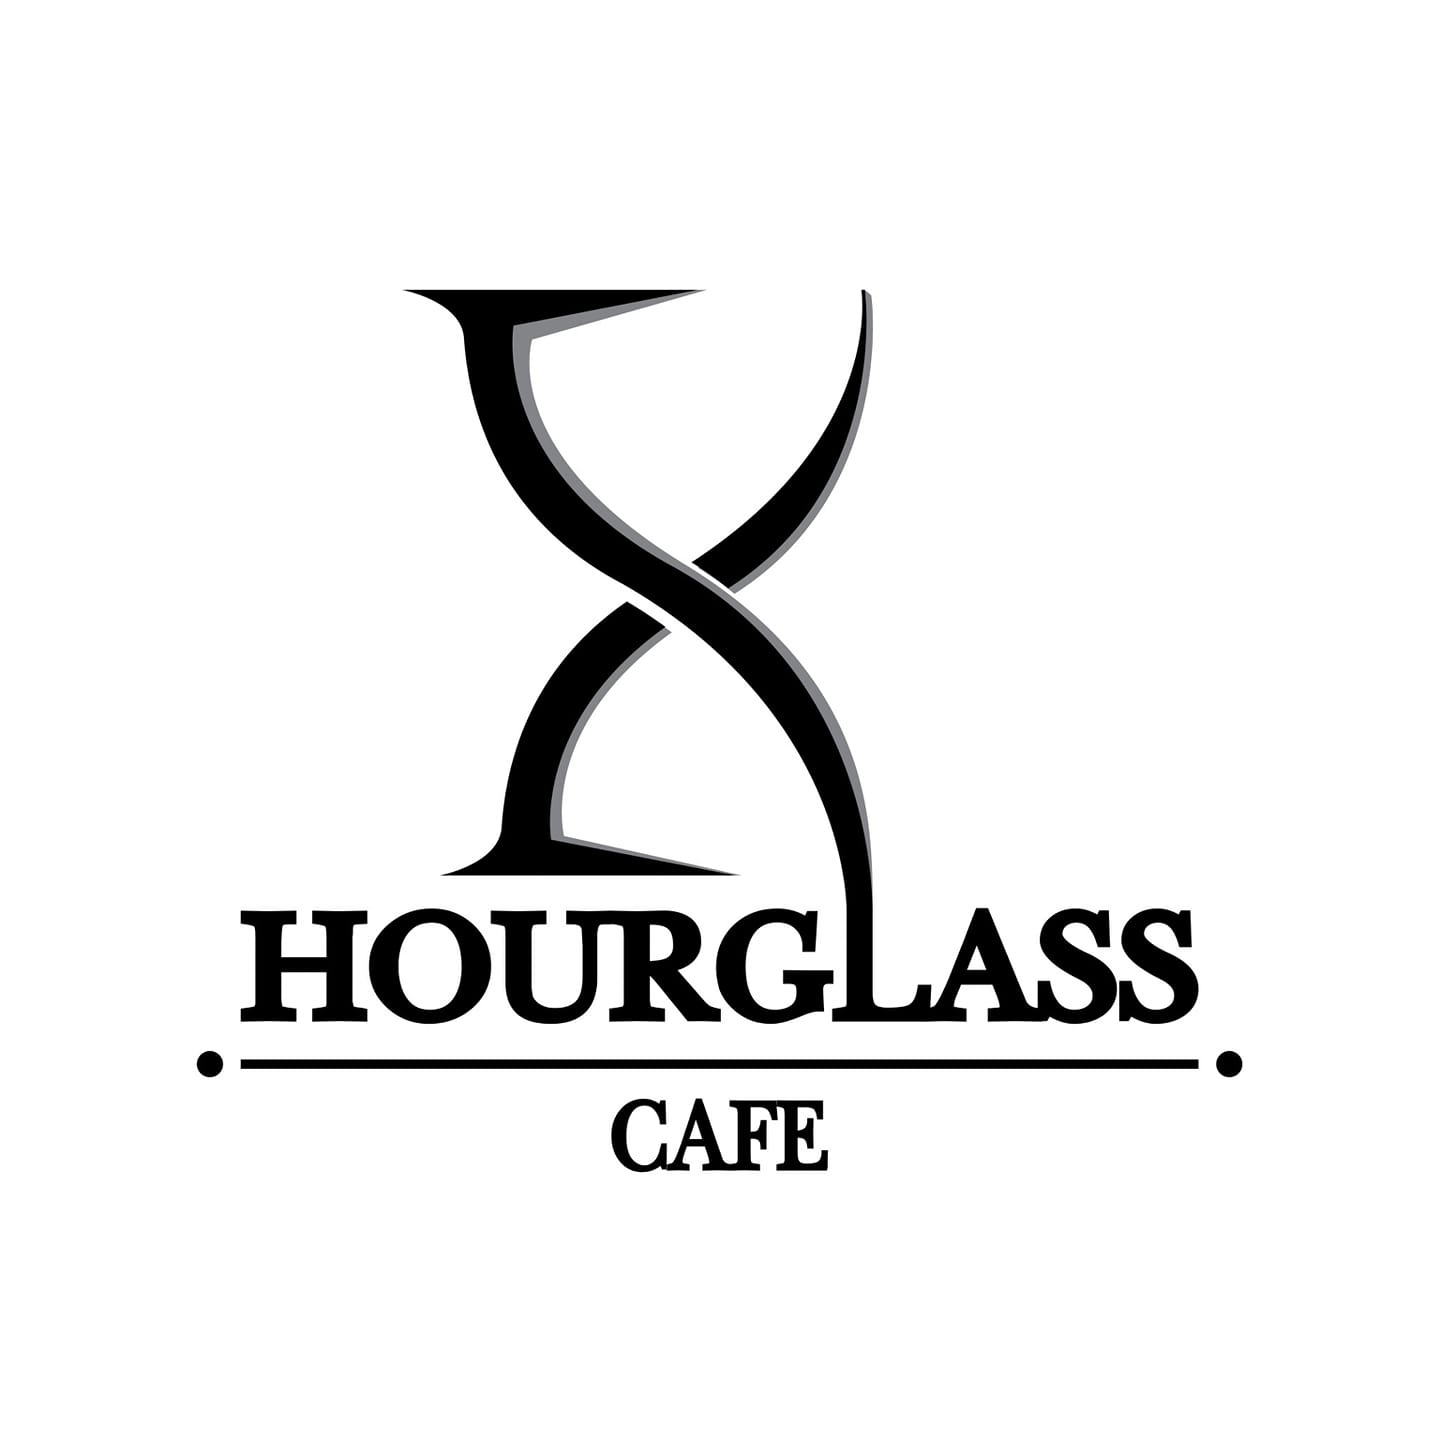 Hourglass Cafe (อาวเวอร์กลาส คาเฟ่) logo โลโก้